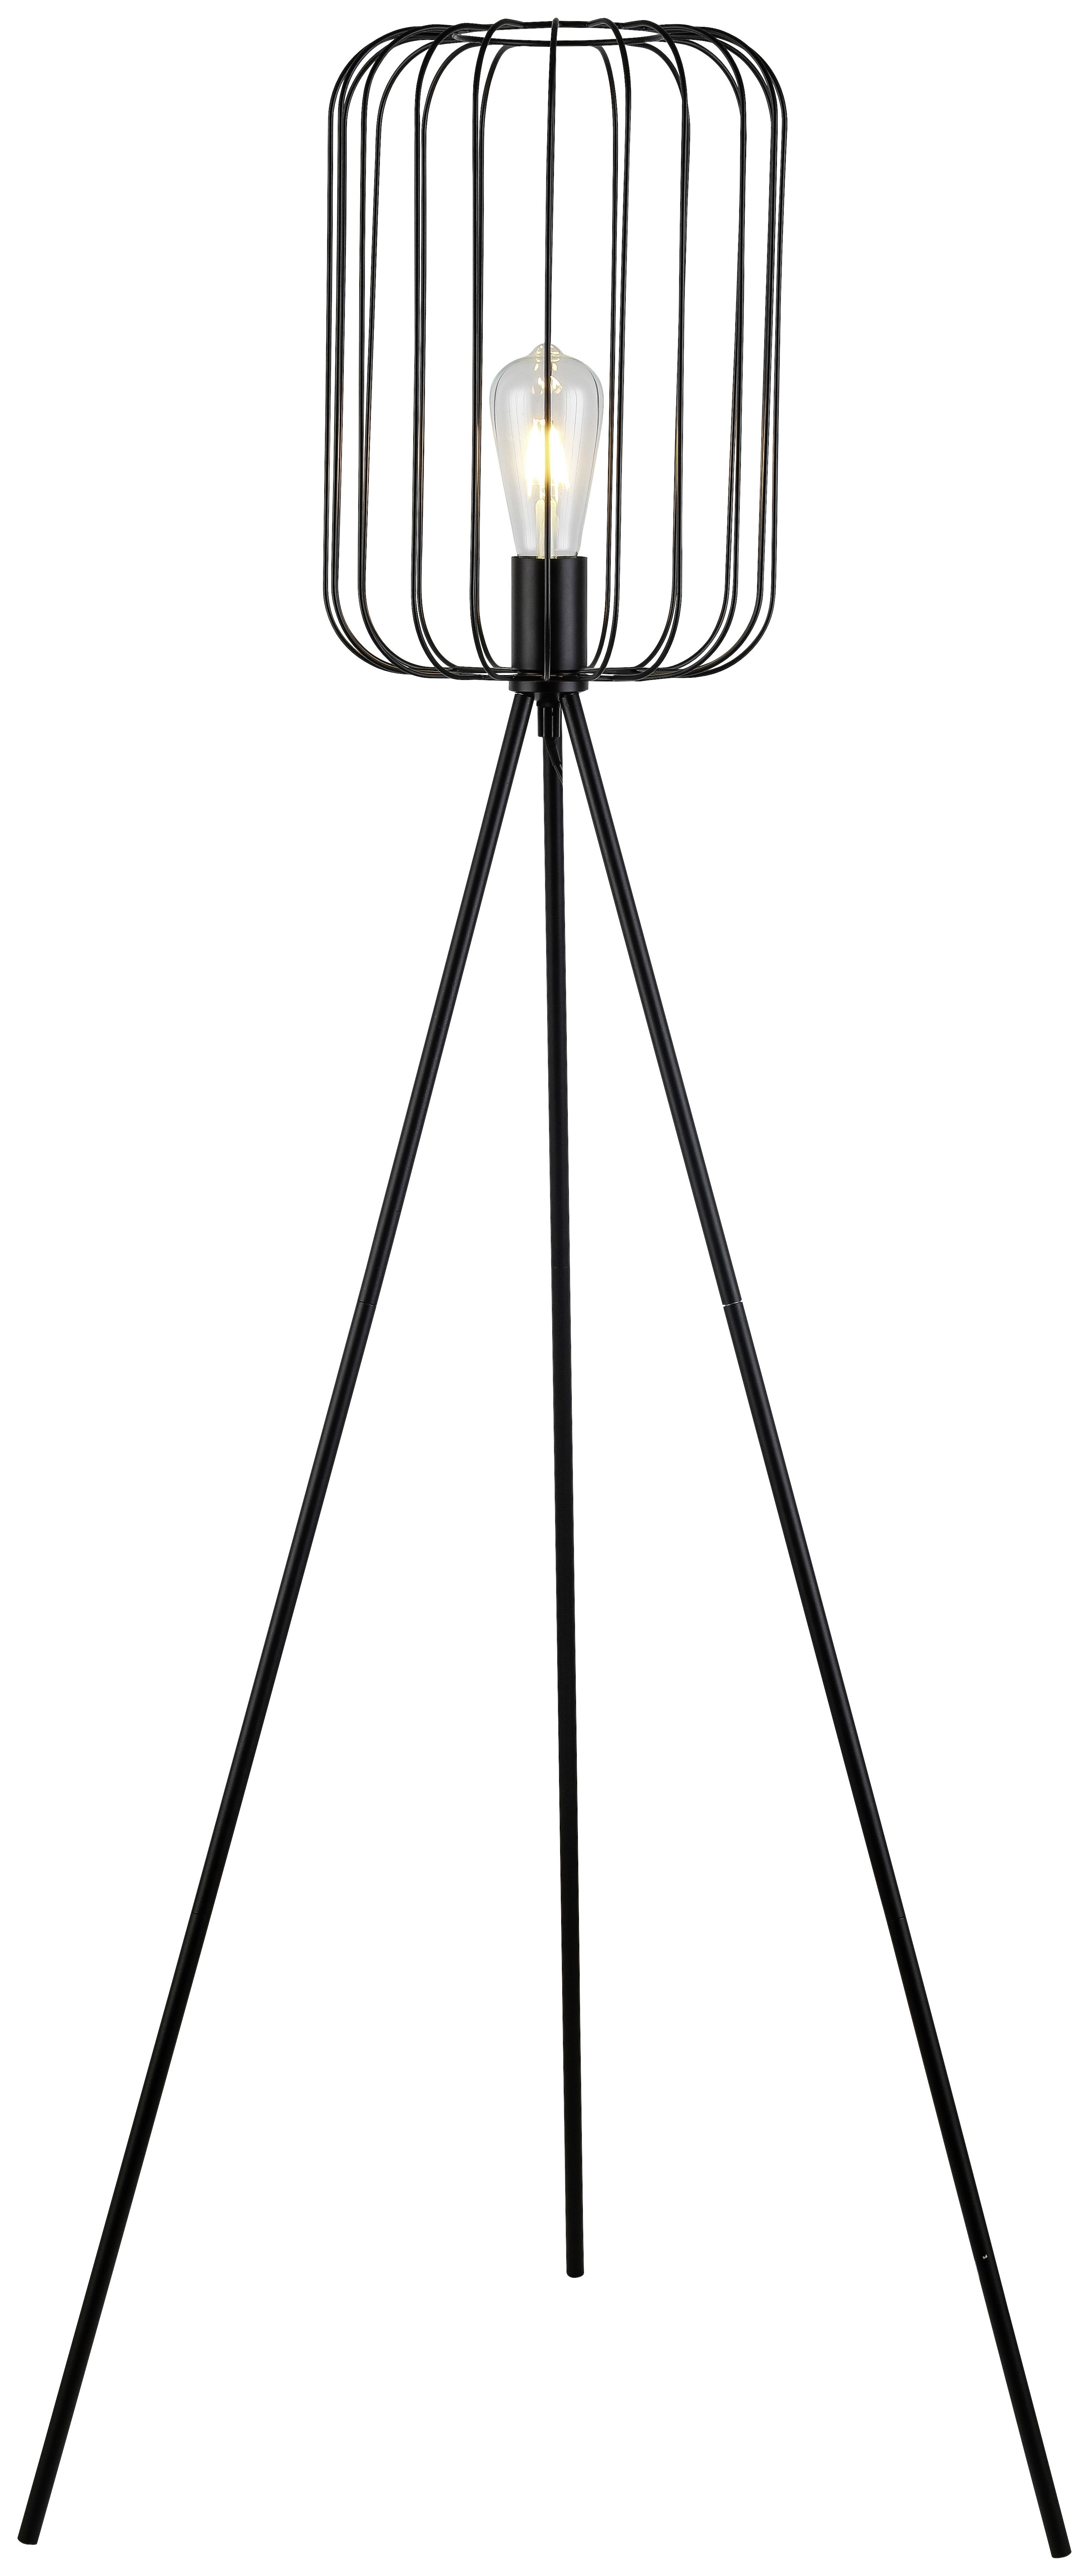 Stehlampe Viona Schwarz Matt mit Fußschalter Dreibeinig - Schwarz, ROMANTIK / LANDHAUS, Metall (26/140cm) - James Wood